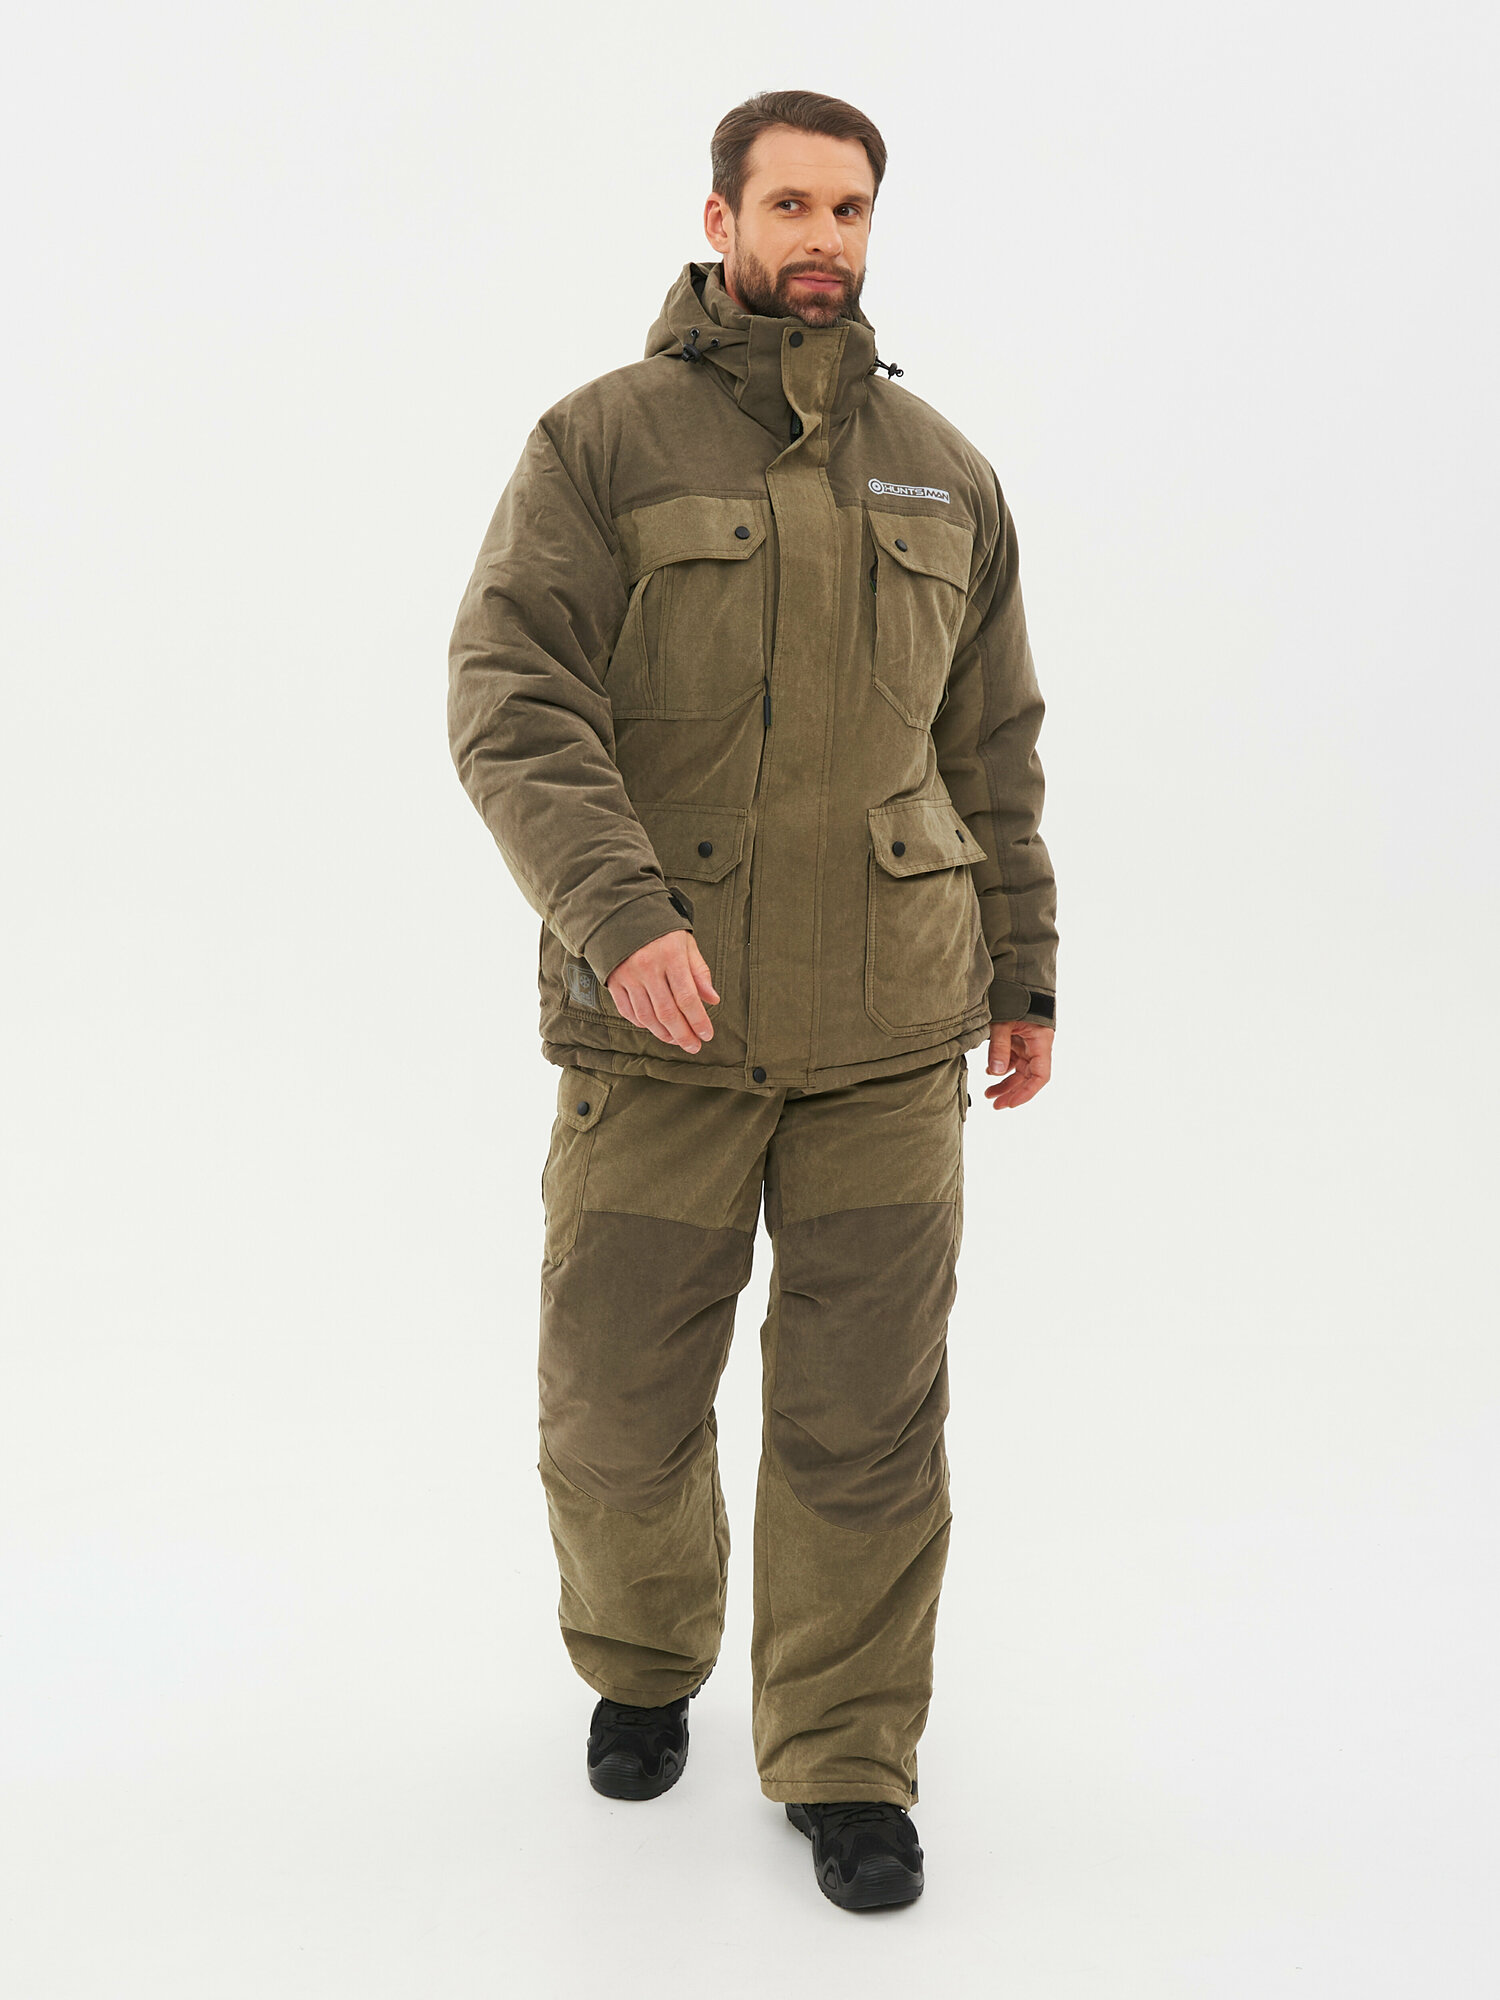 Костюм тактический мужской зимний Huntsman Канада туристический, для охоты, рыбалки ветровлагозащитный, ткань Finlandia, цвет хаки (р.44-46/170-176)